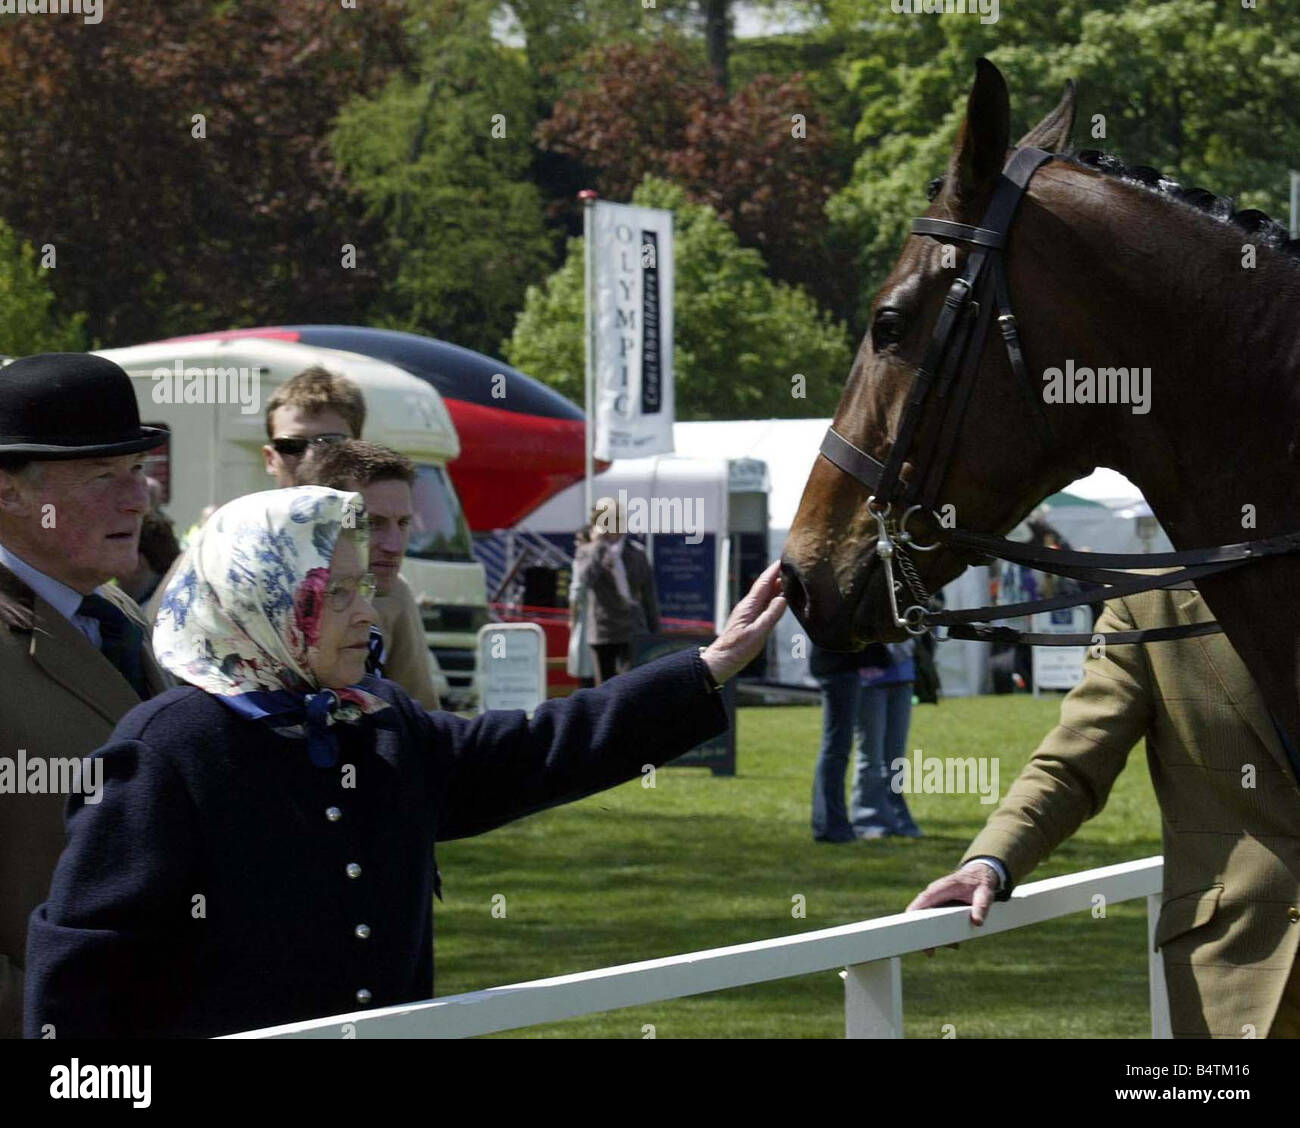 Sa Majesté la Reine Elizabeth II a visité le Royal Windsor Horse Show dans le parc du château de Windsor la Reine avait un bain de foule et la regarda l'exécution dans l'anneau foulard Vêtements Smiling Mai 2005 2000 Mirrorpix s Banque D'Images